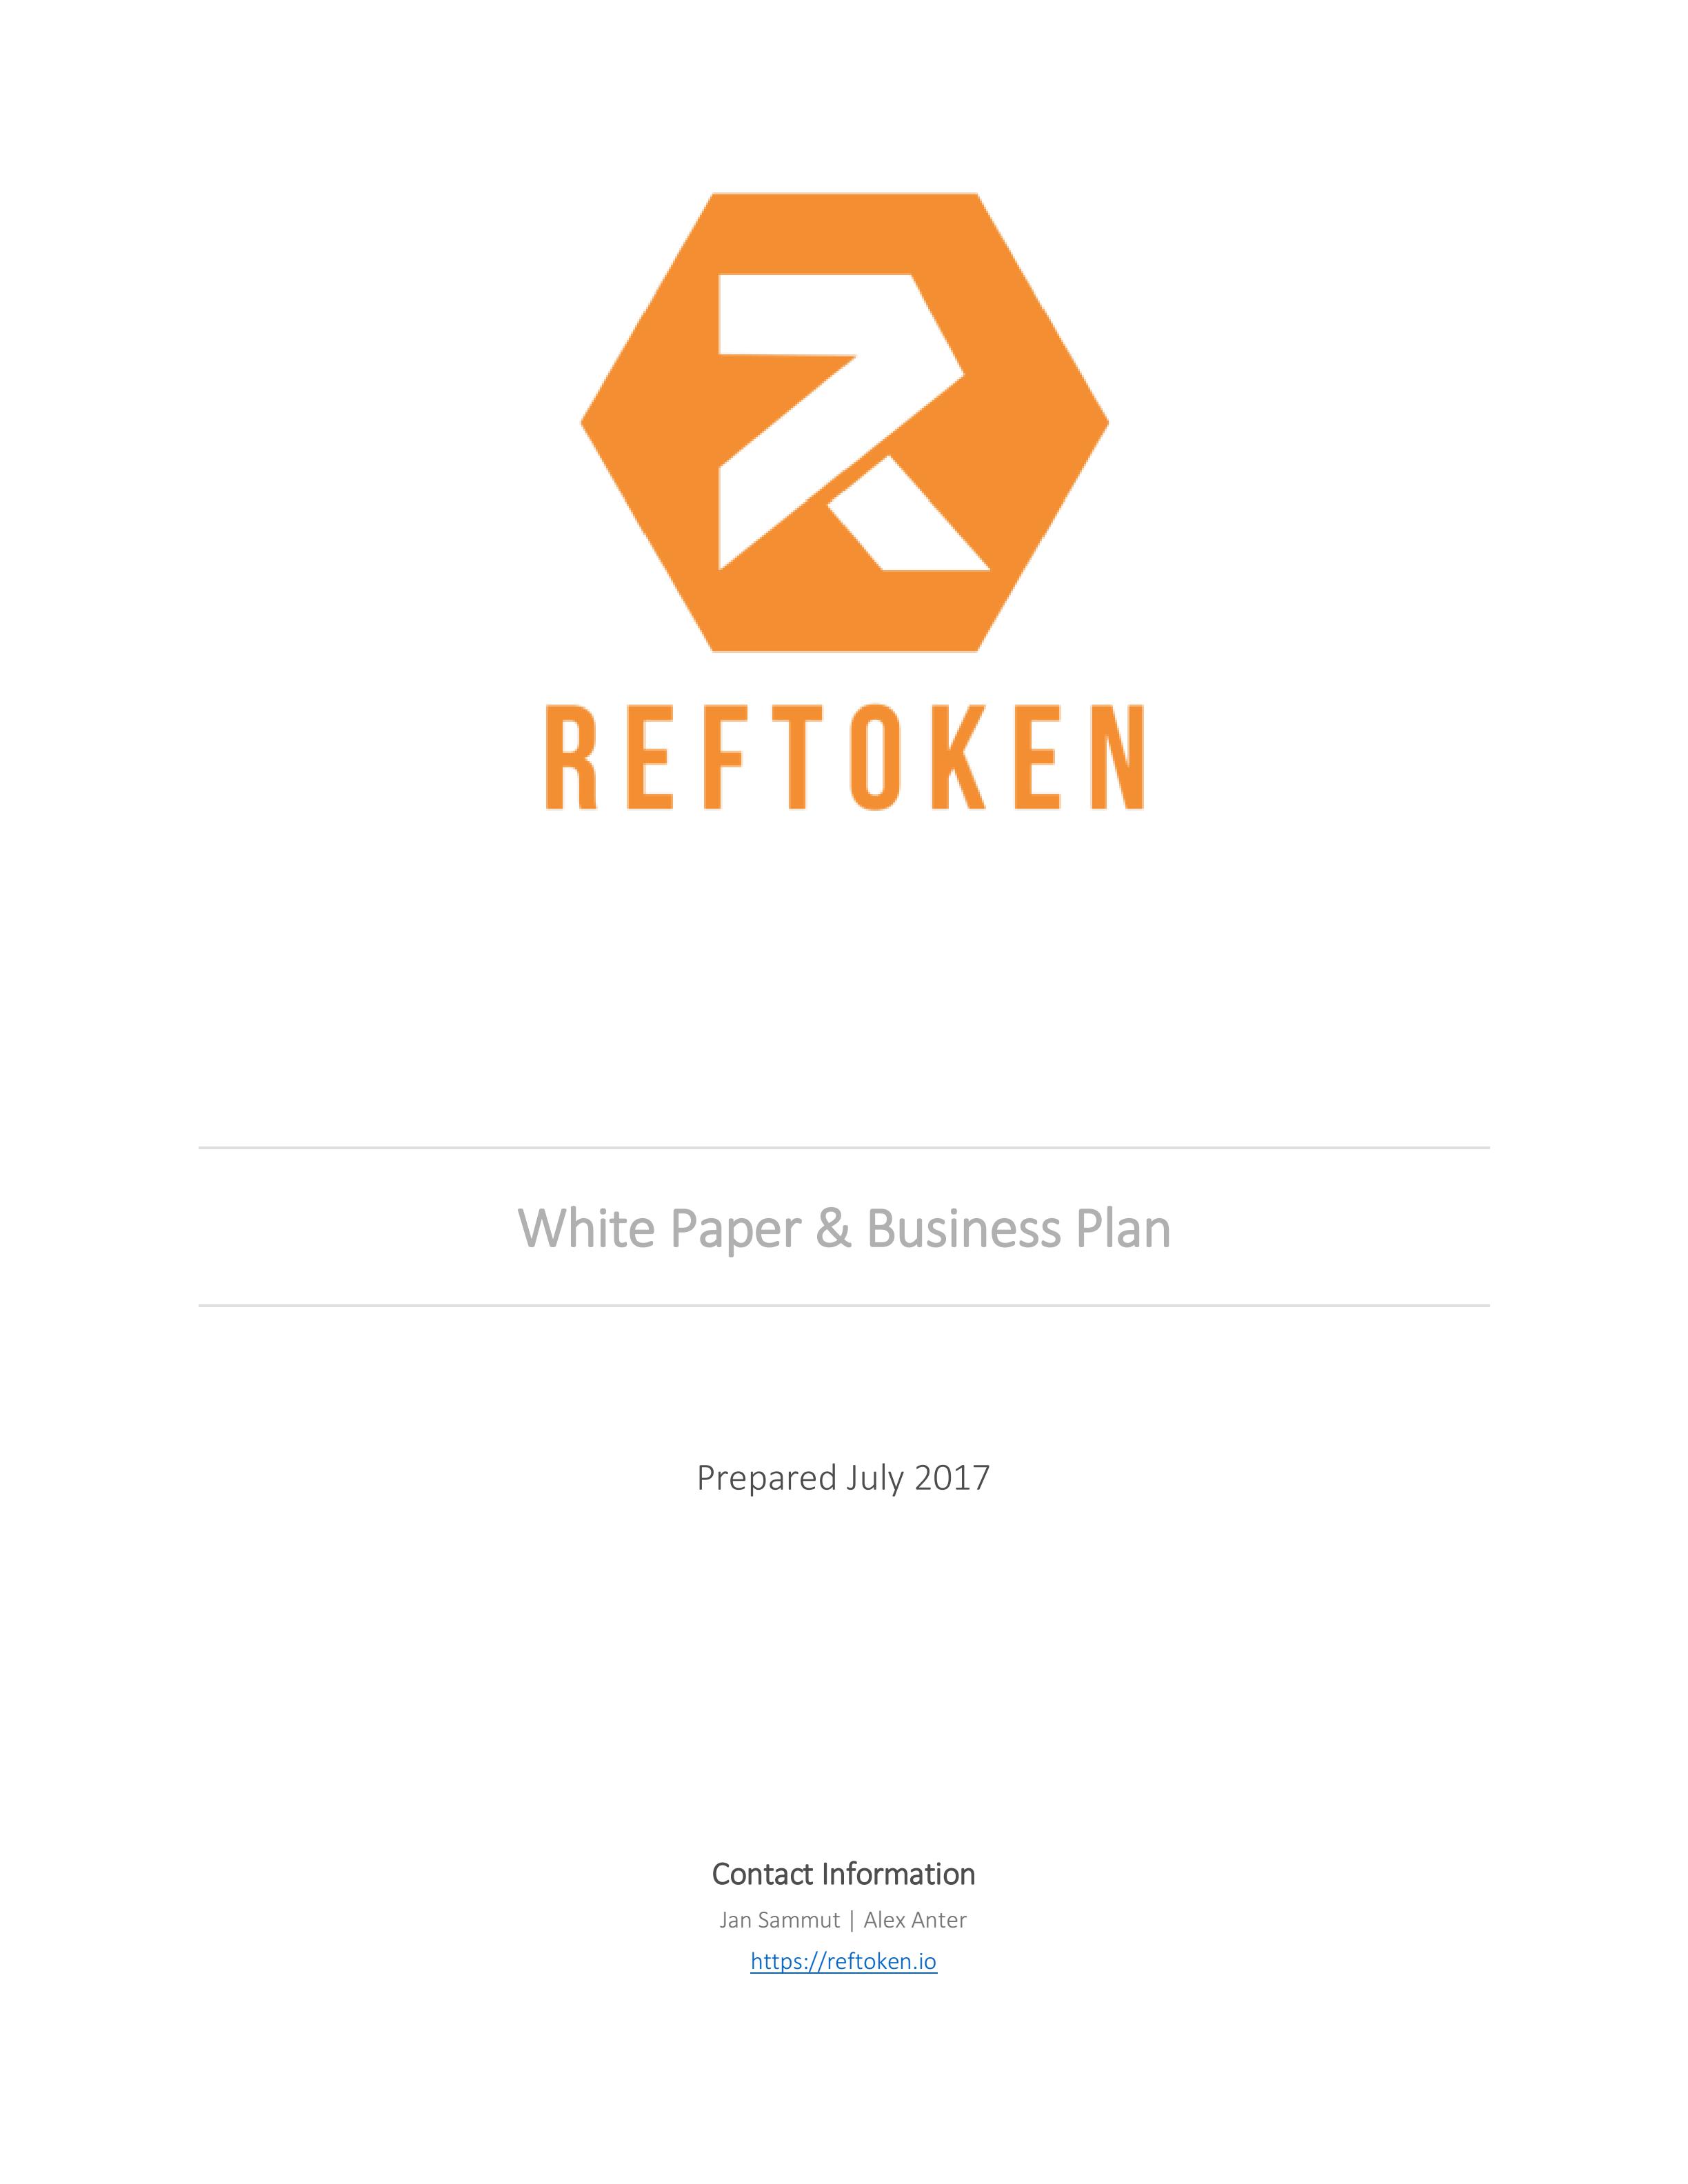 REF_reftoken-whitepaper-5.6_00.jpg